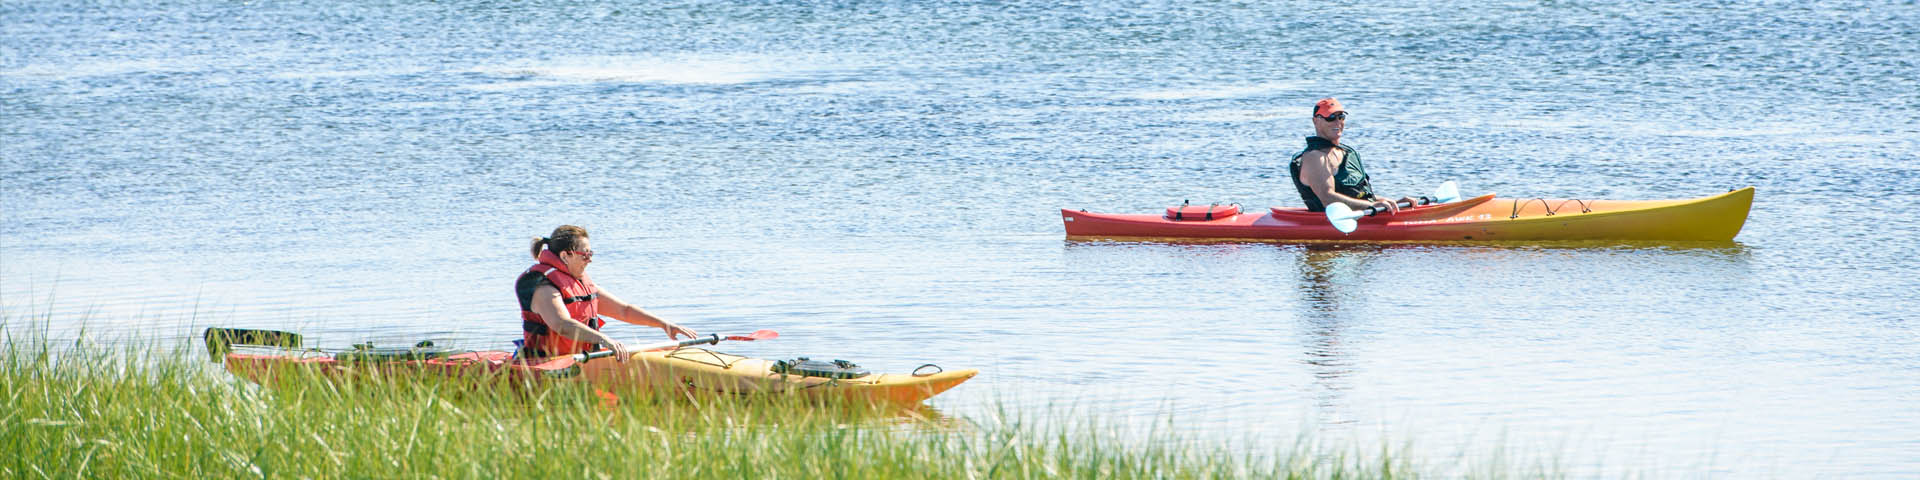 Deux visiteurs en kayak sur la lagune